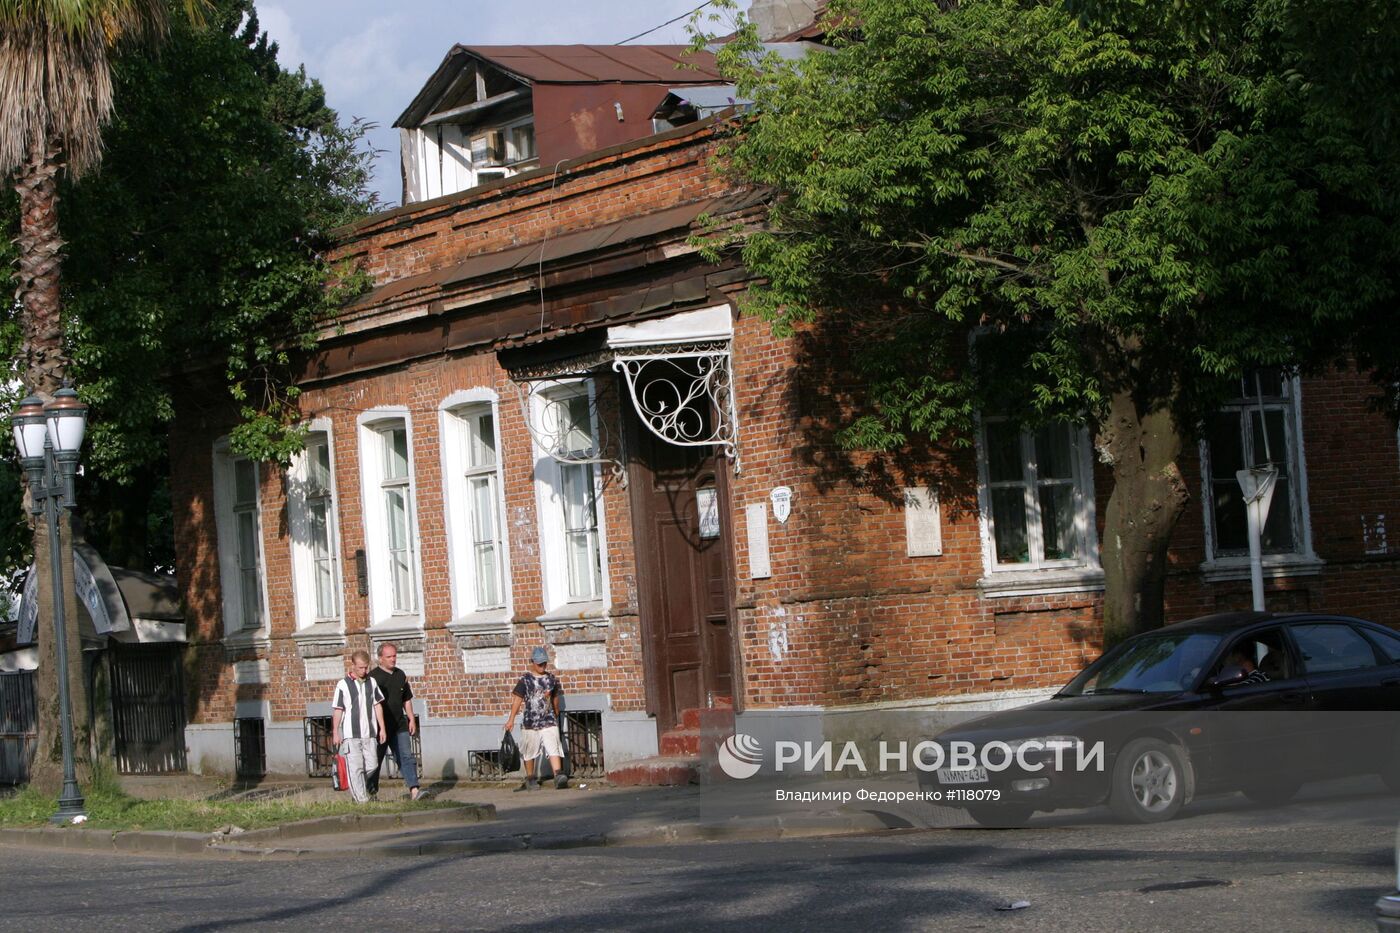 Дом, в котором останавливались А. Чехов и М. Горький